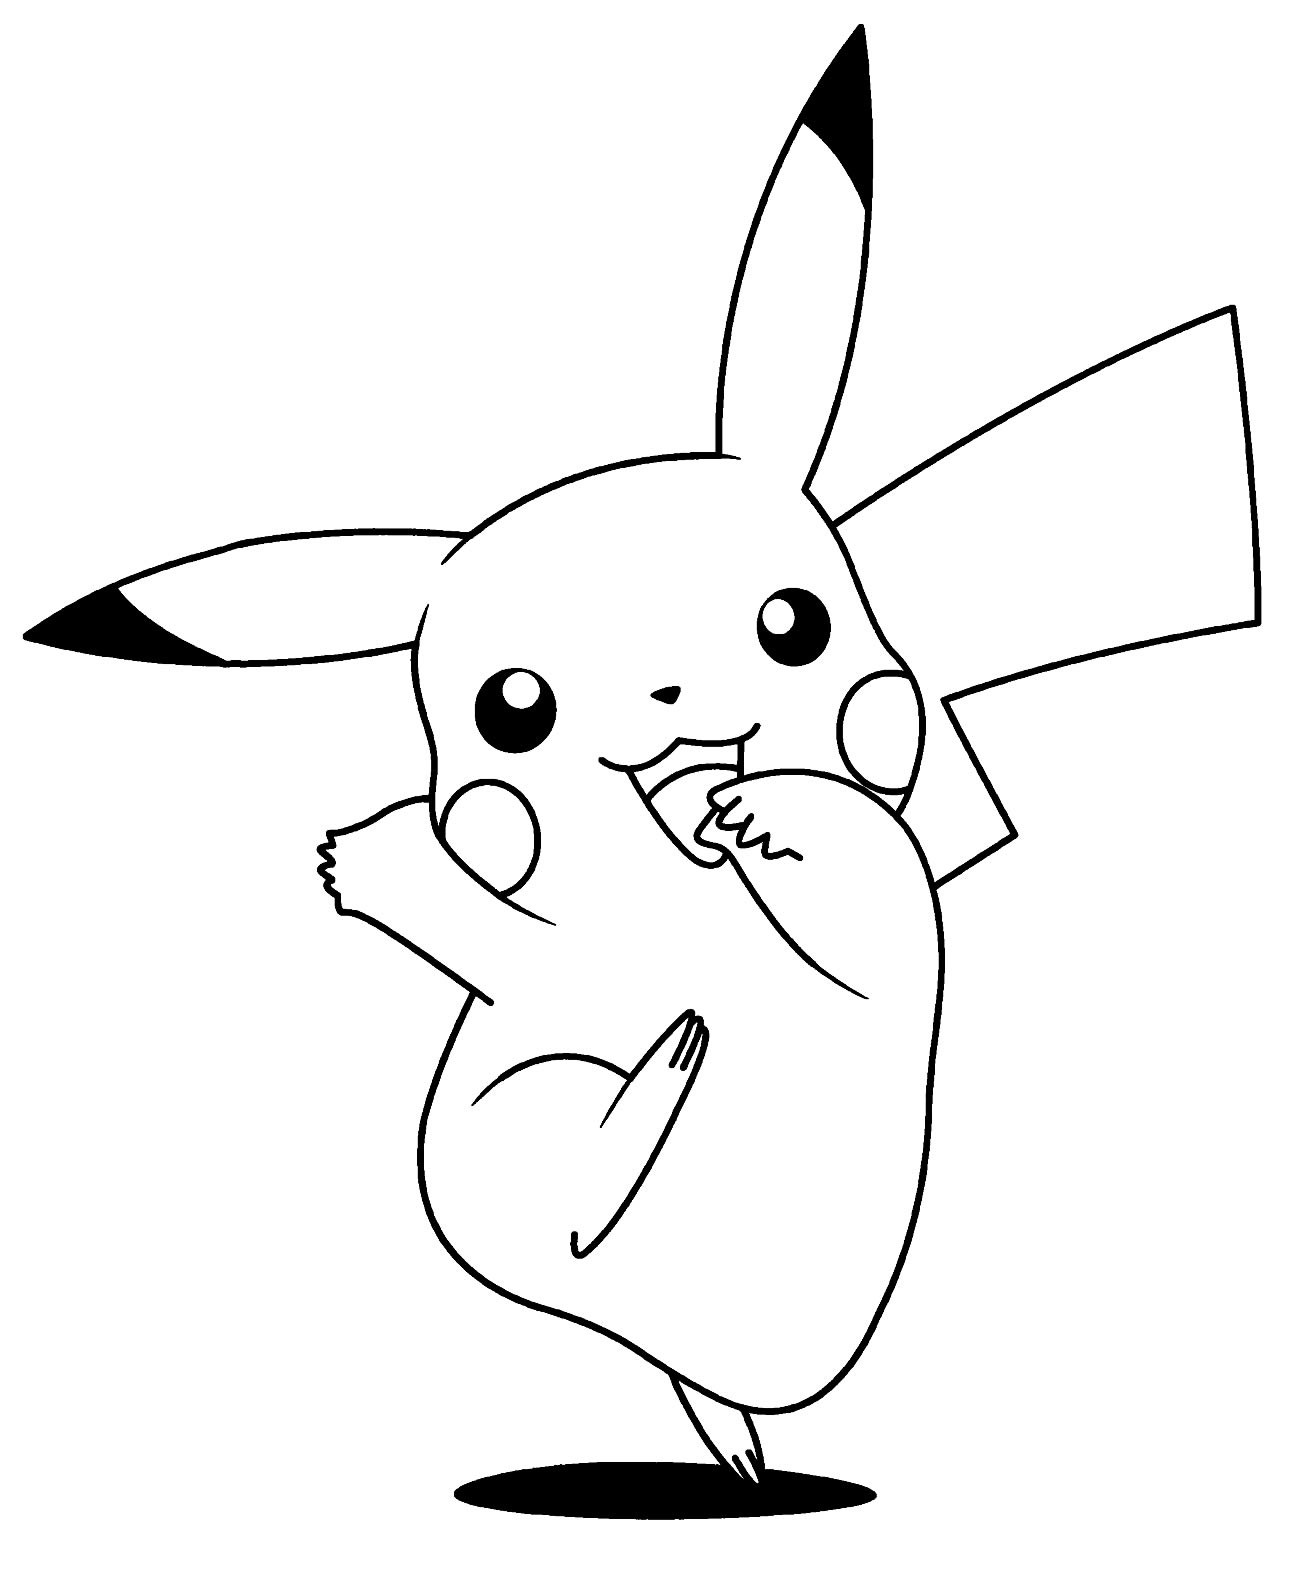 Imagem de Pokémon para colorir